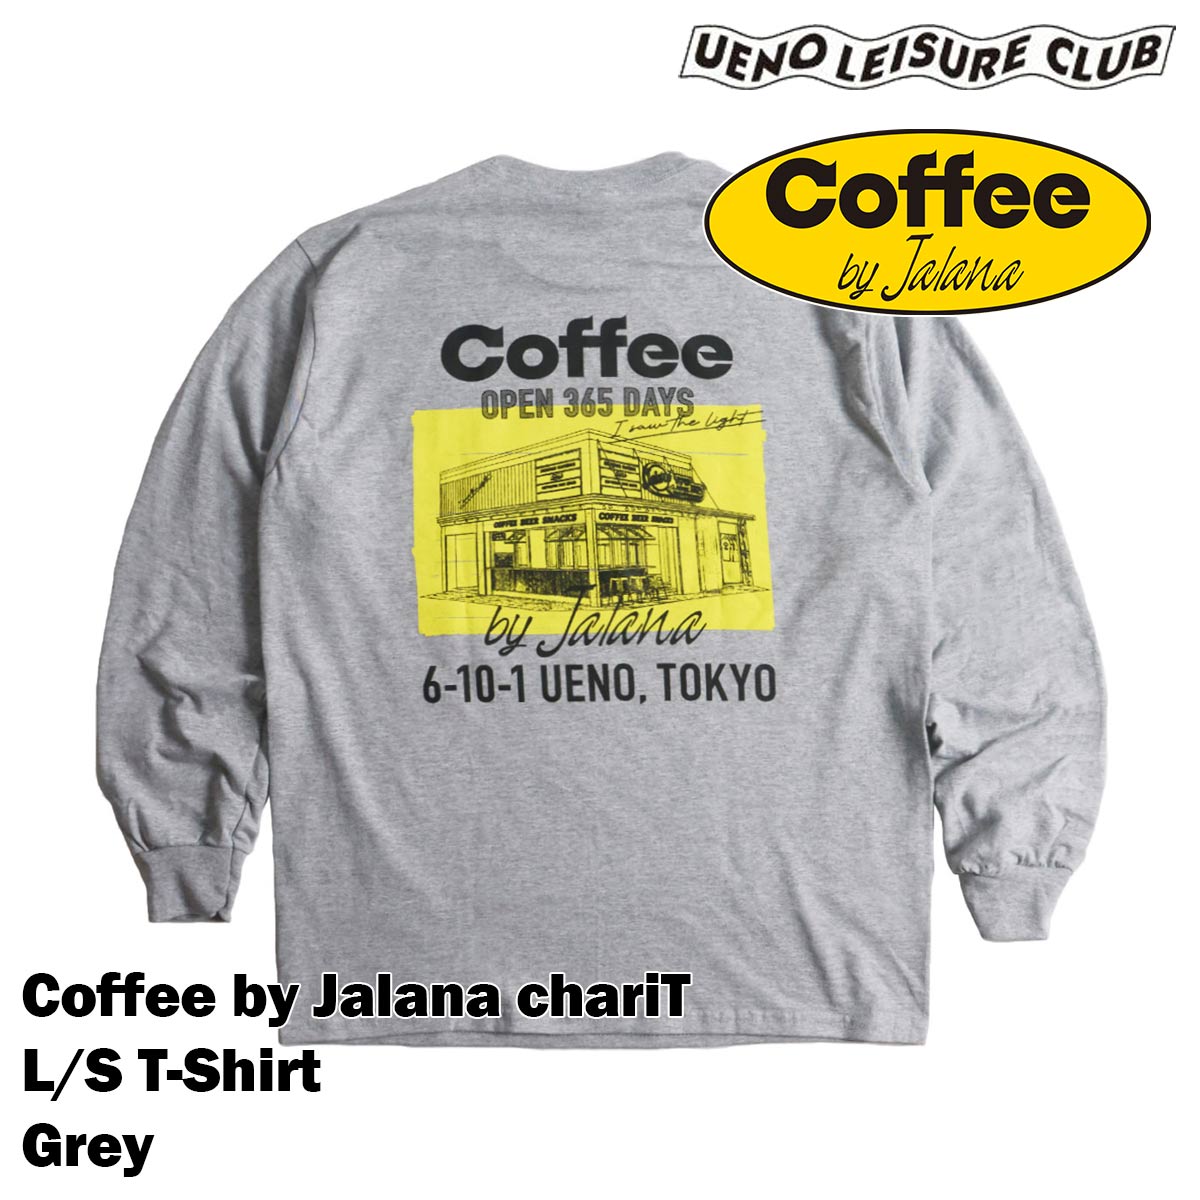 ウエノレジャークラブ UENO LEISURE CLUB Coffee by Jalana char...